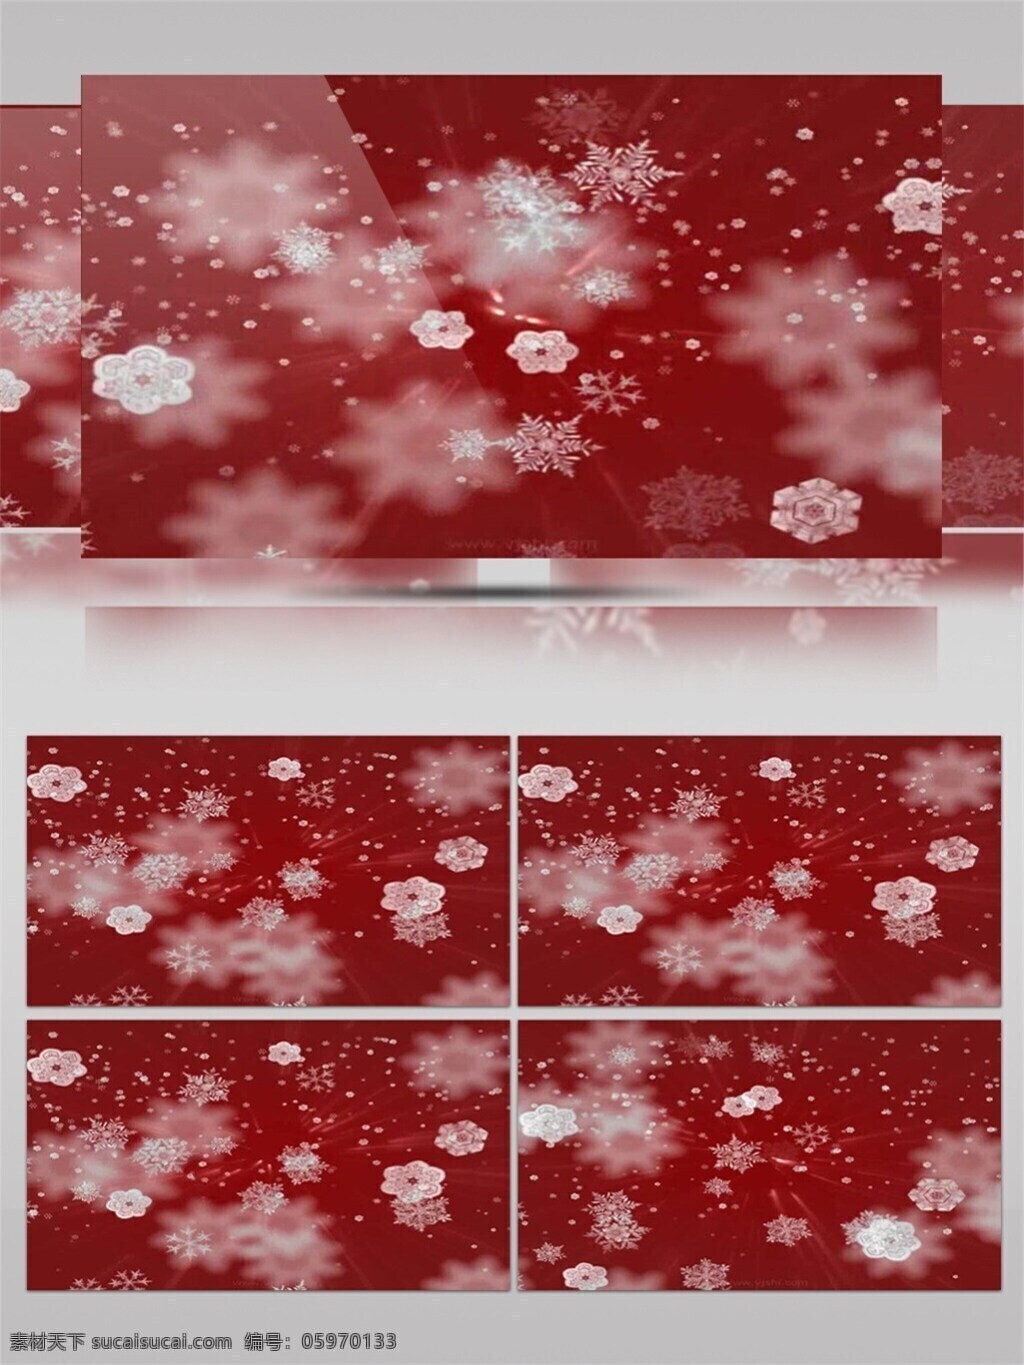 圣诞节 红色 背景 雪花 视频 节日壁纸 节日 特效 圣诞节庆祝 优美图画